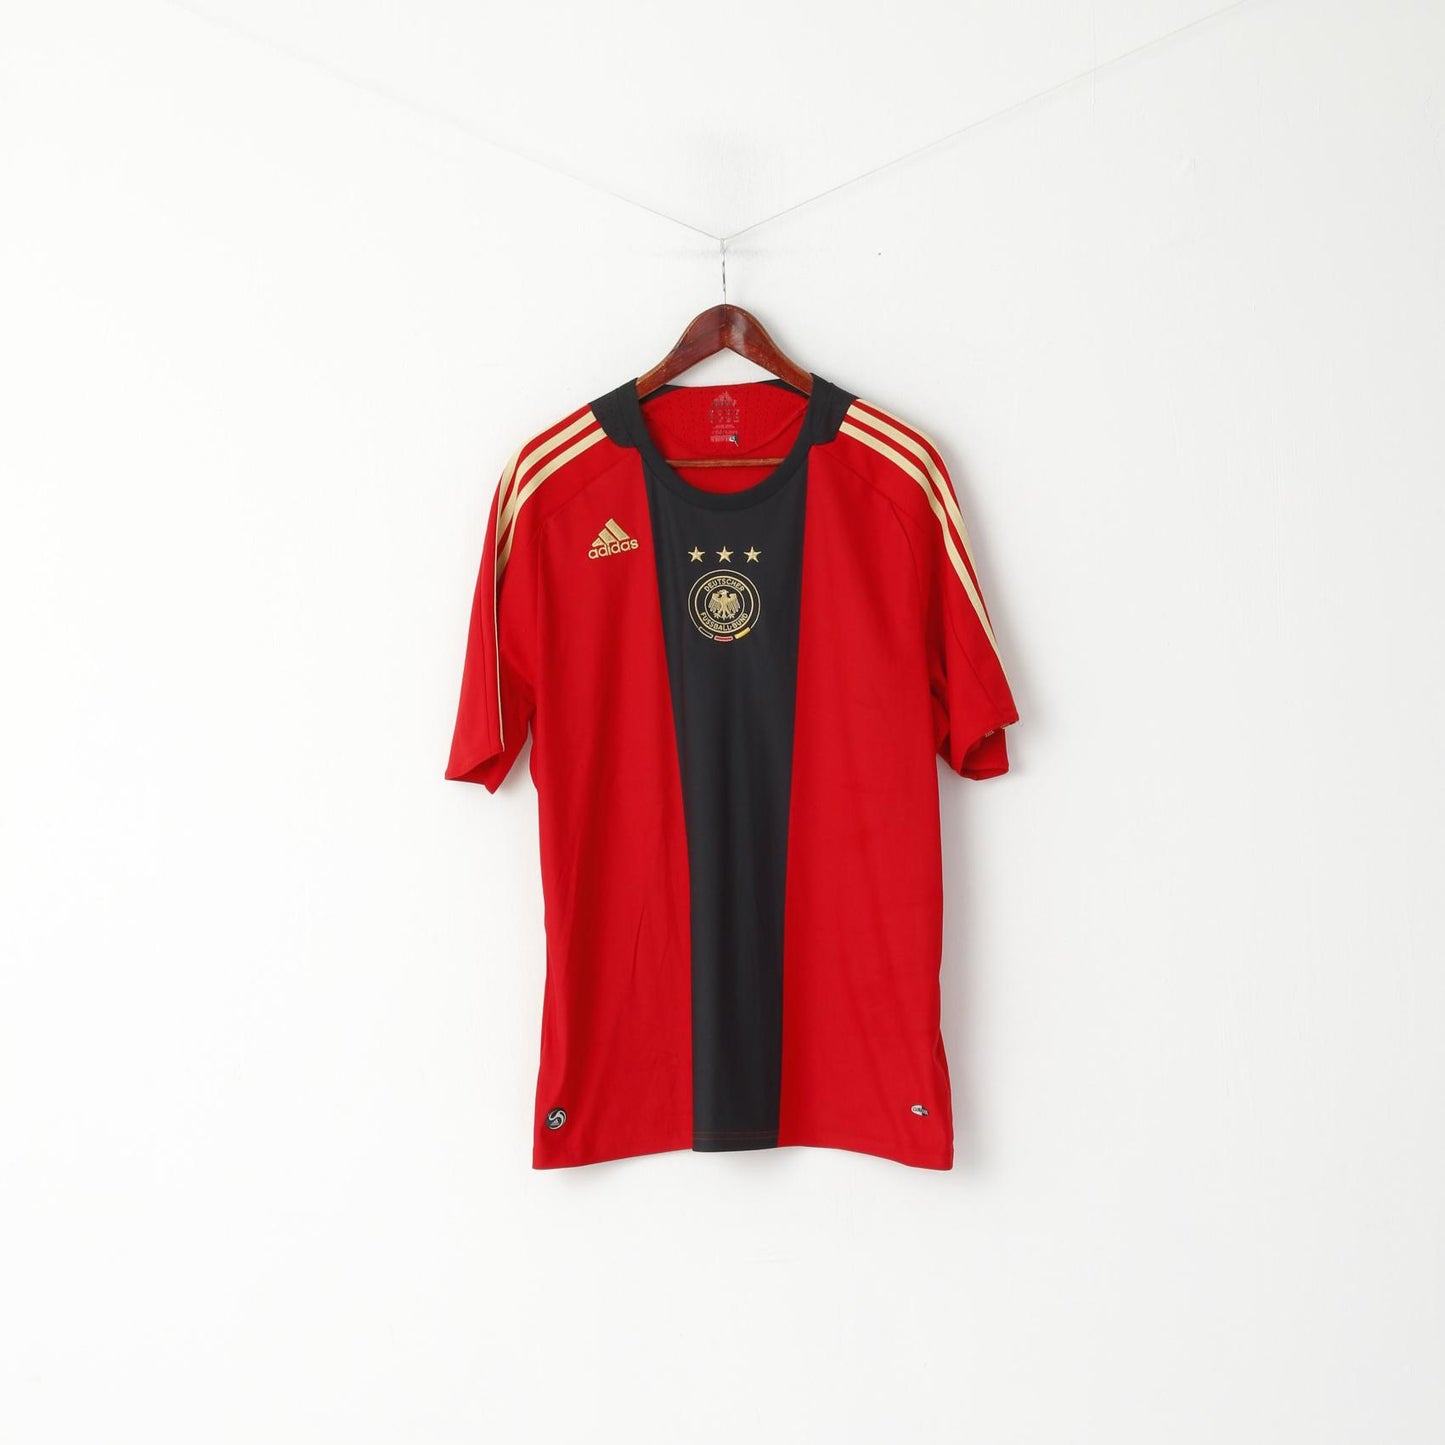 Maglia Adidas da uomo XL rossa Deutscher Fussball Bund maglia da calcio vintage